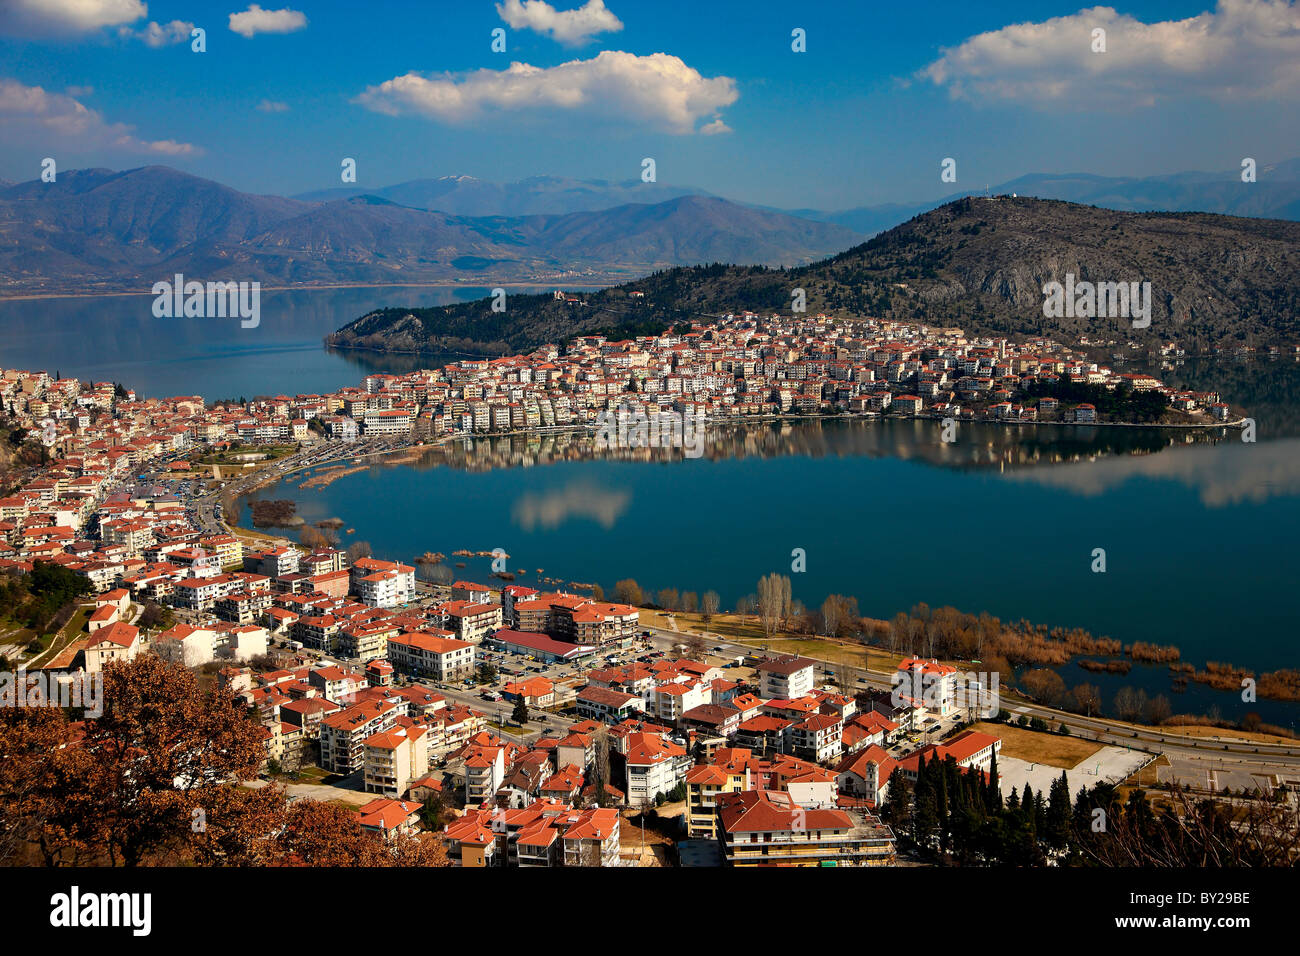 Vue panoramique de la ville de Kastoria, entouré de belles 'Orestias' ou 'lac' d'Orestiada. Macédoine, Grèce. Banque D'Images